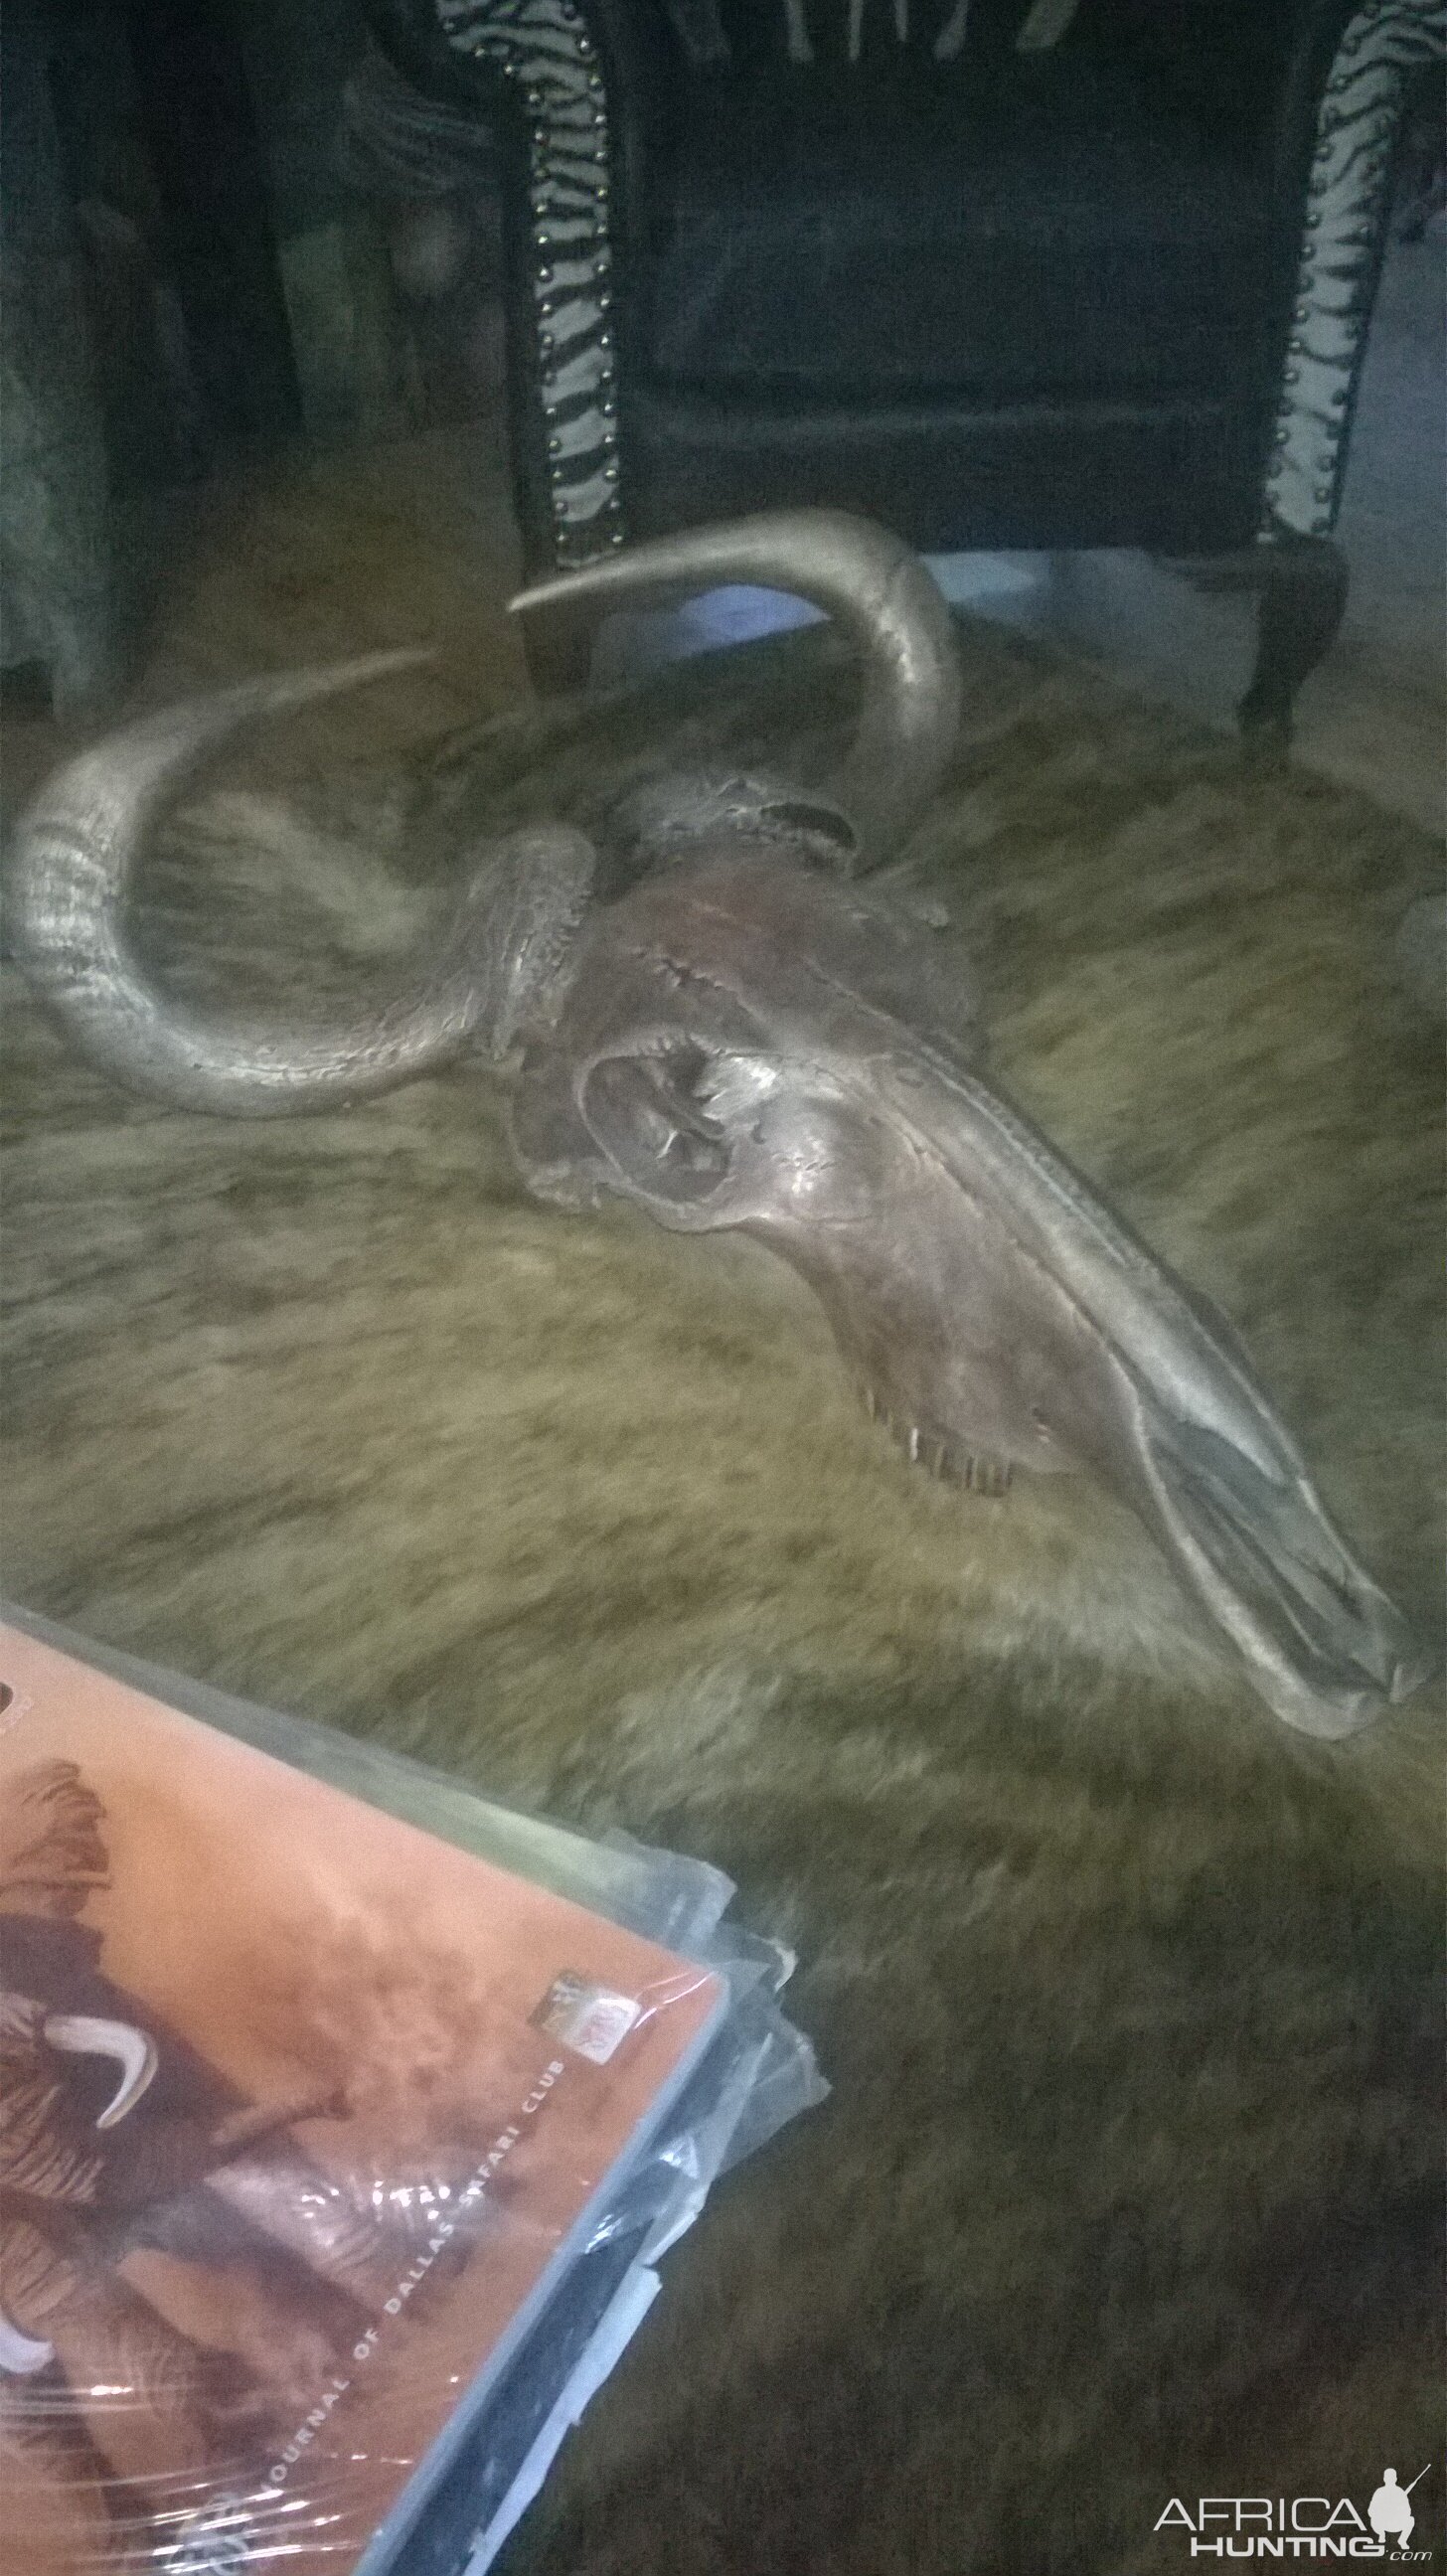 Bronzed Blue Wildebeest Skull Mount Taxidermy